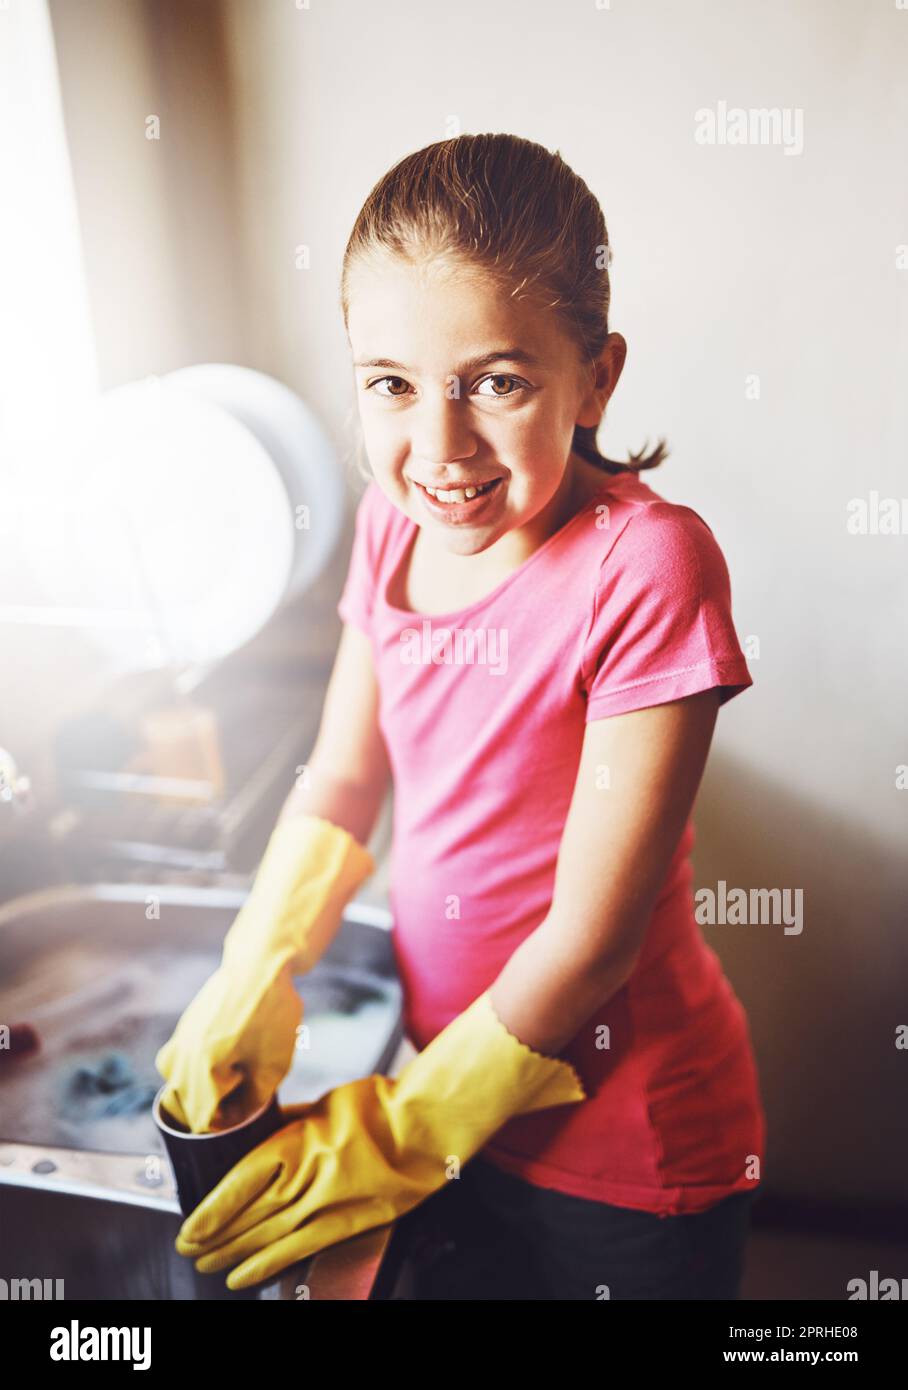 Aider maman avec des plats. Portrait d'une jeune fille gaie lavant des plats avec des gants jaunes à la maison tout en regardant l'appareil photo. Banque D'Images